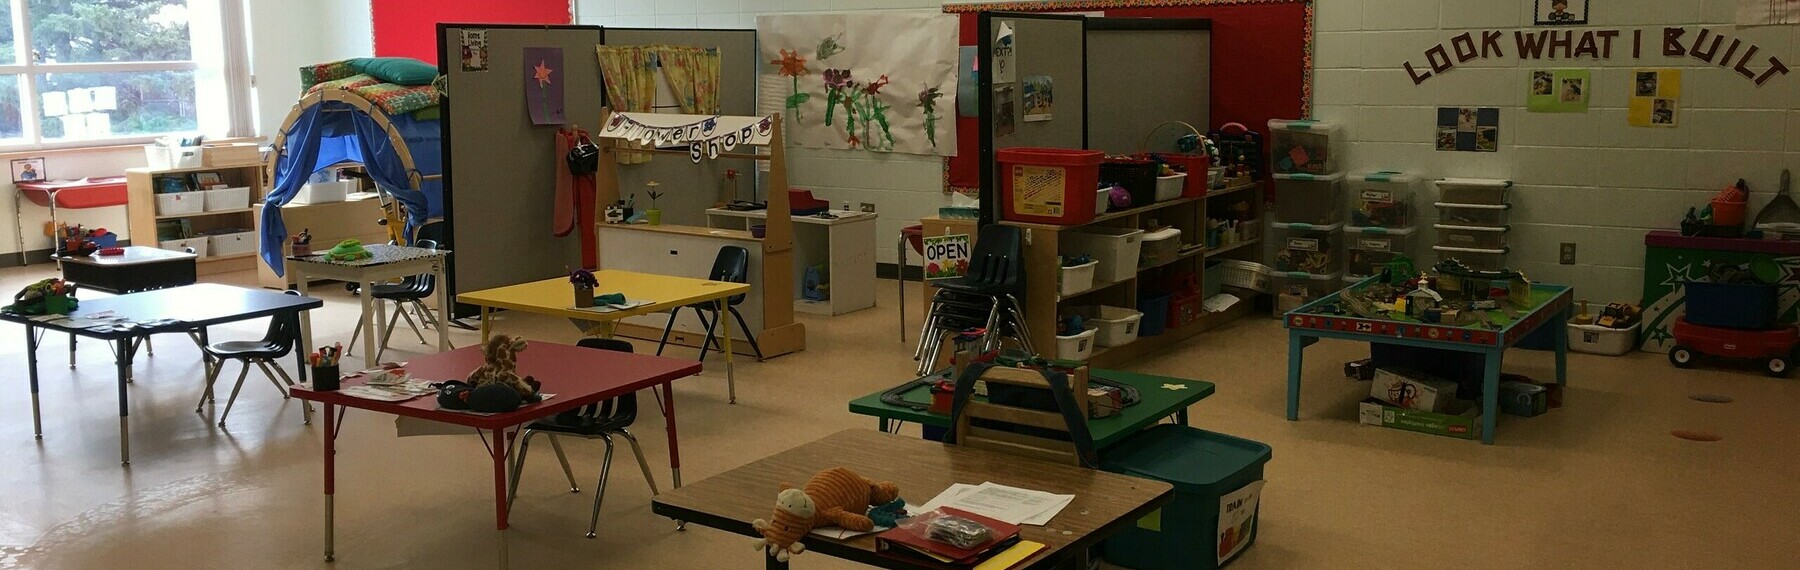 Our Pre-Kindergarten room